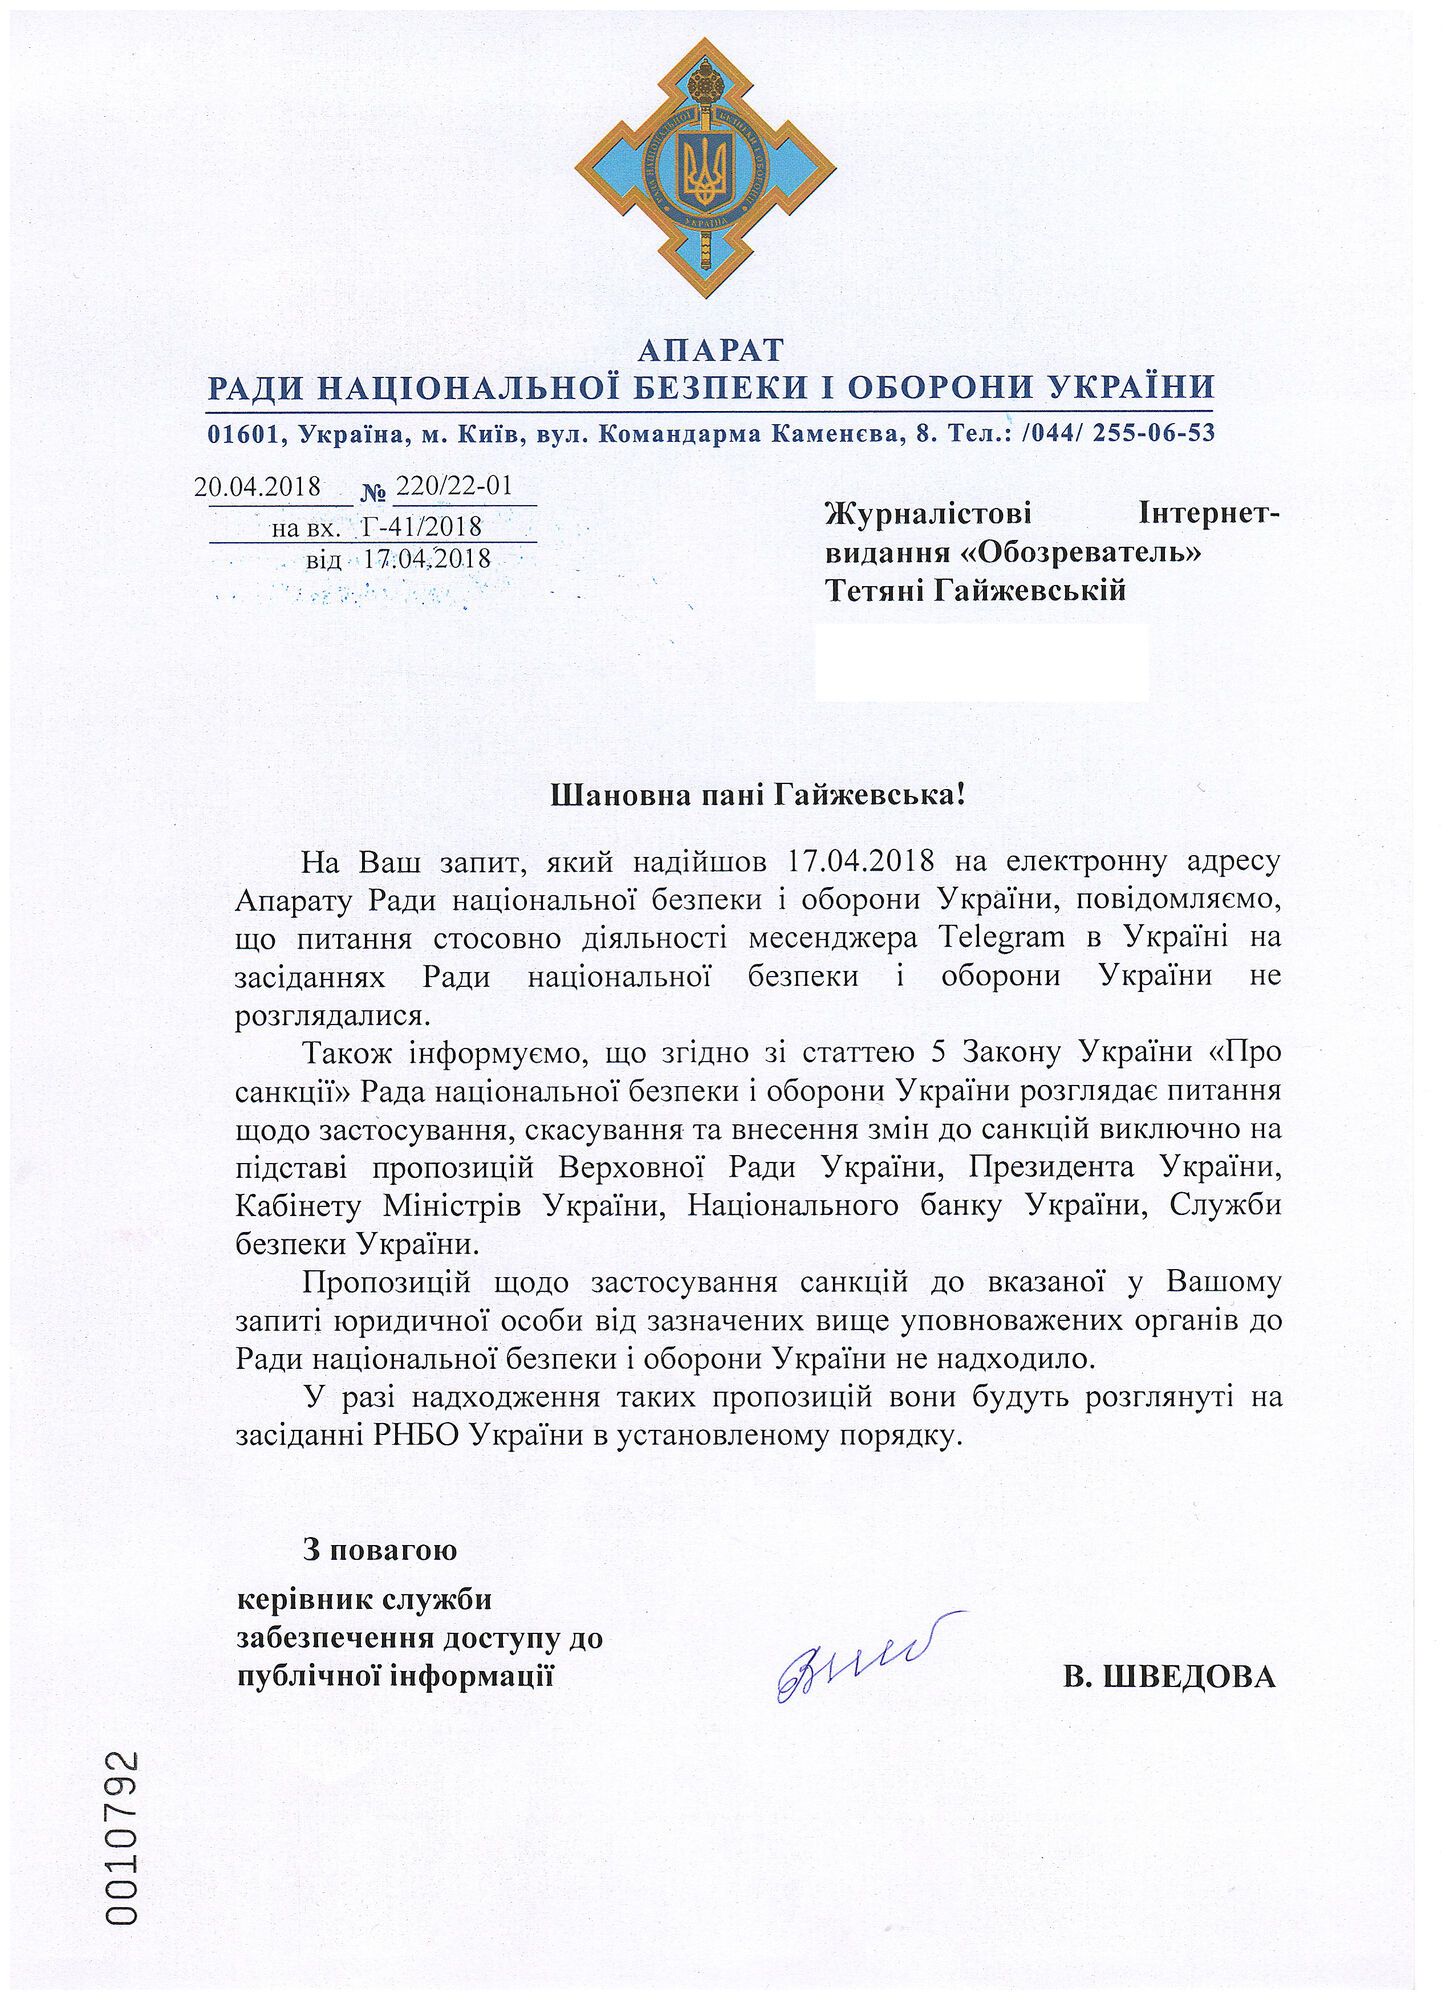 В СНБО Украины ответили по поводу санкций к Telegram: документ